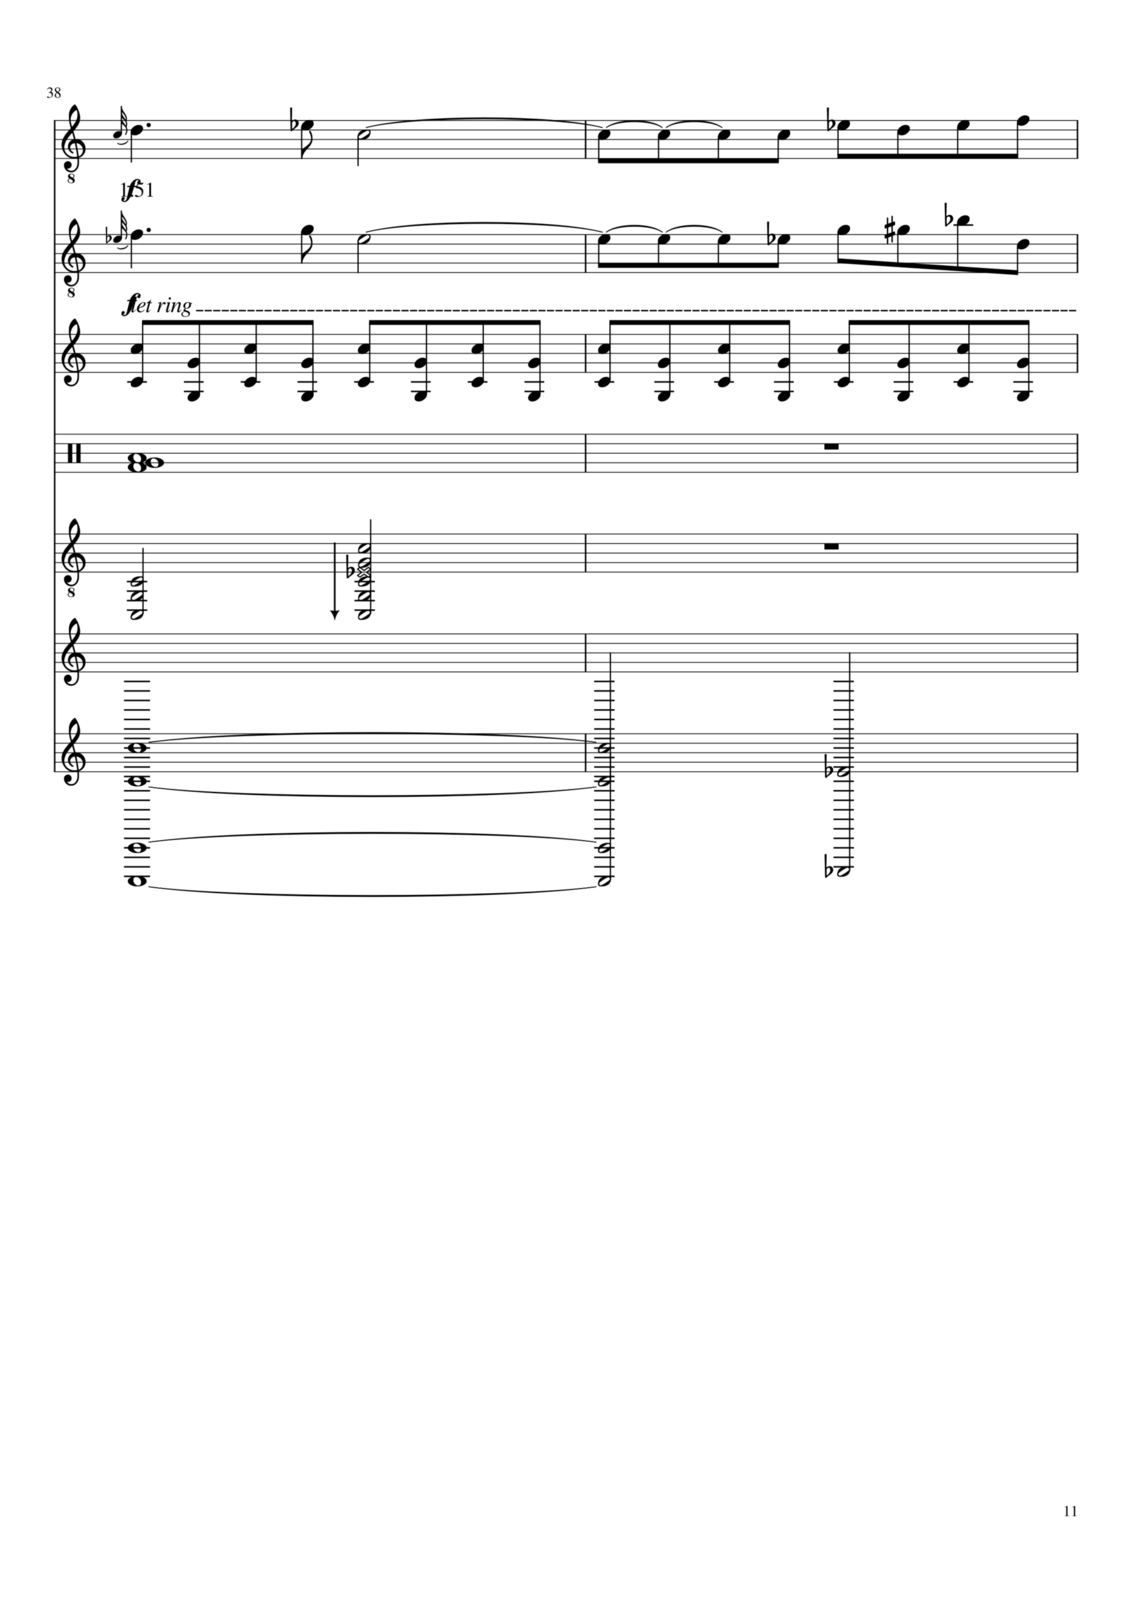 Vechnaya prizrachnaya vstrechnaya slide, Image 25